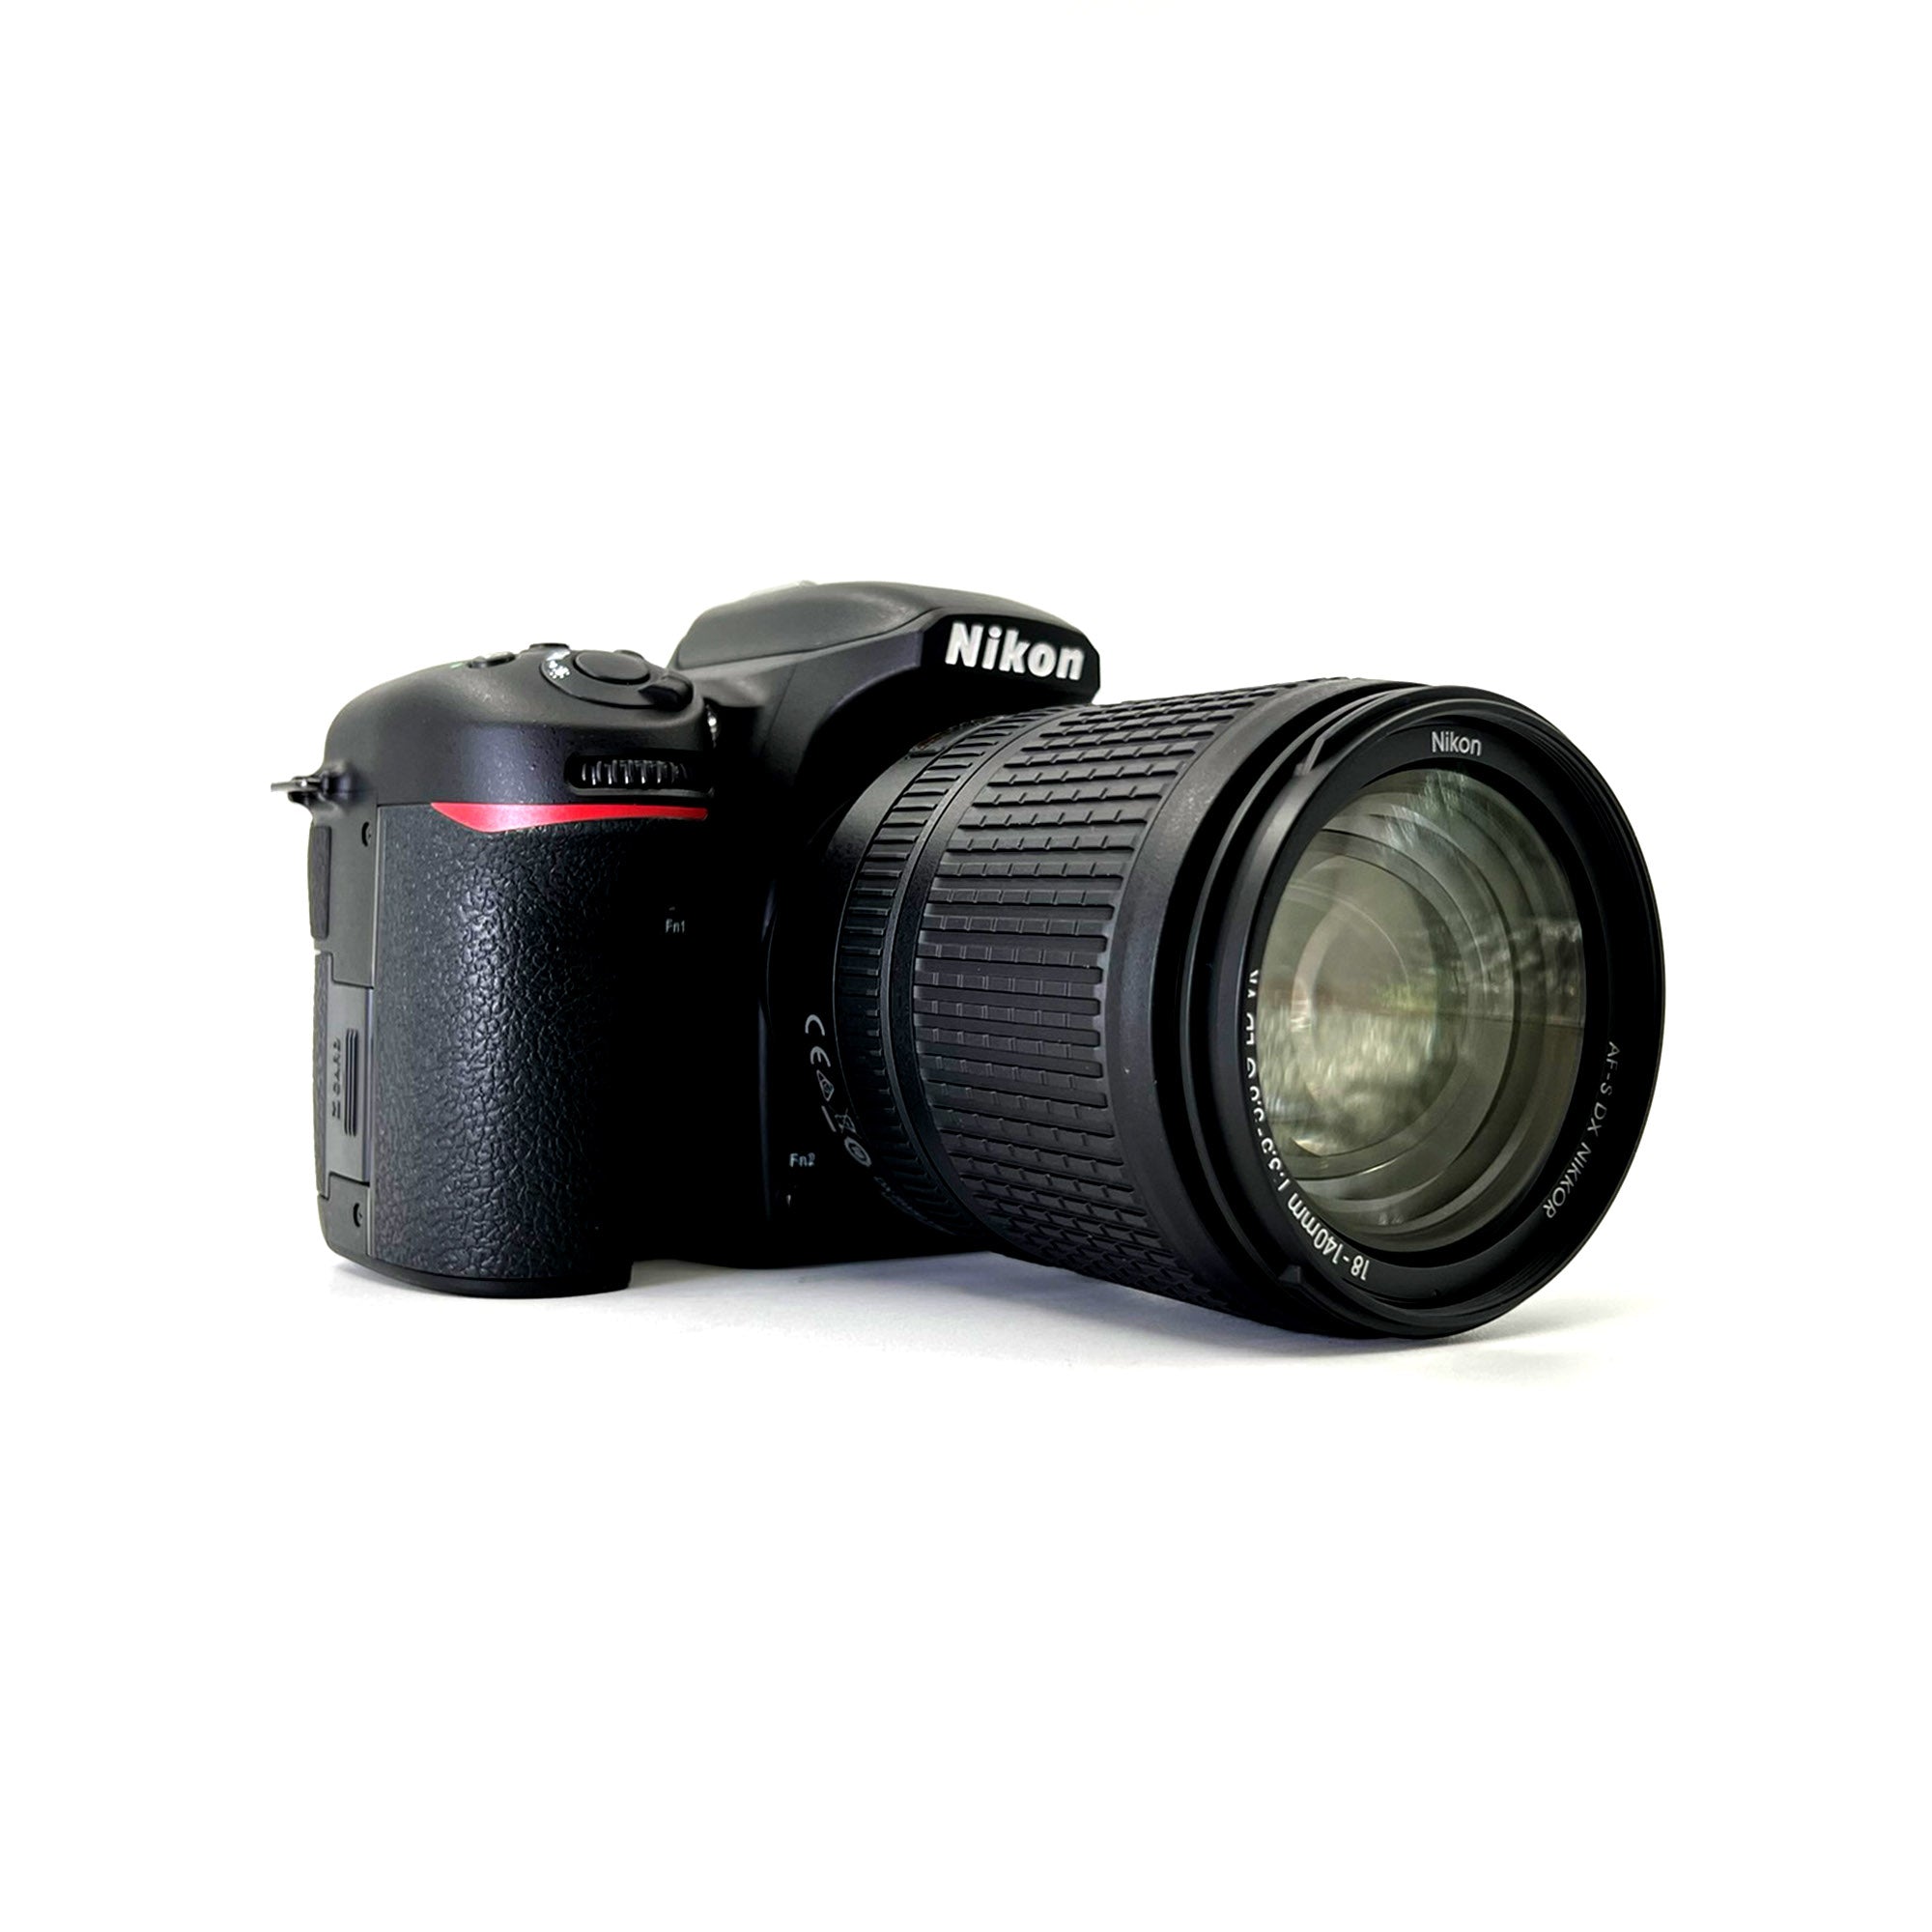 Nikon D7500 DSLR Camera with AF-S 18-140mm VR Lens, 20.9 MP, 4K